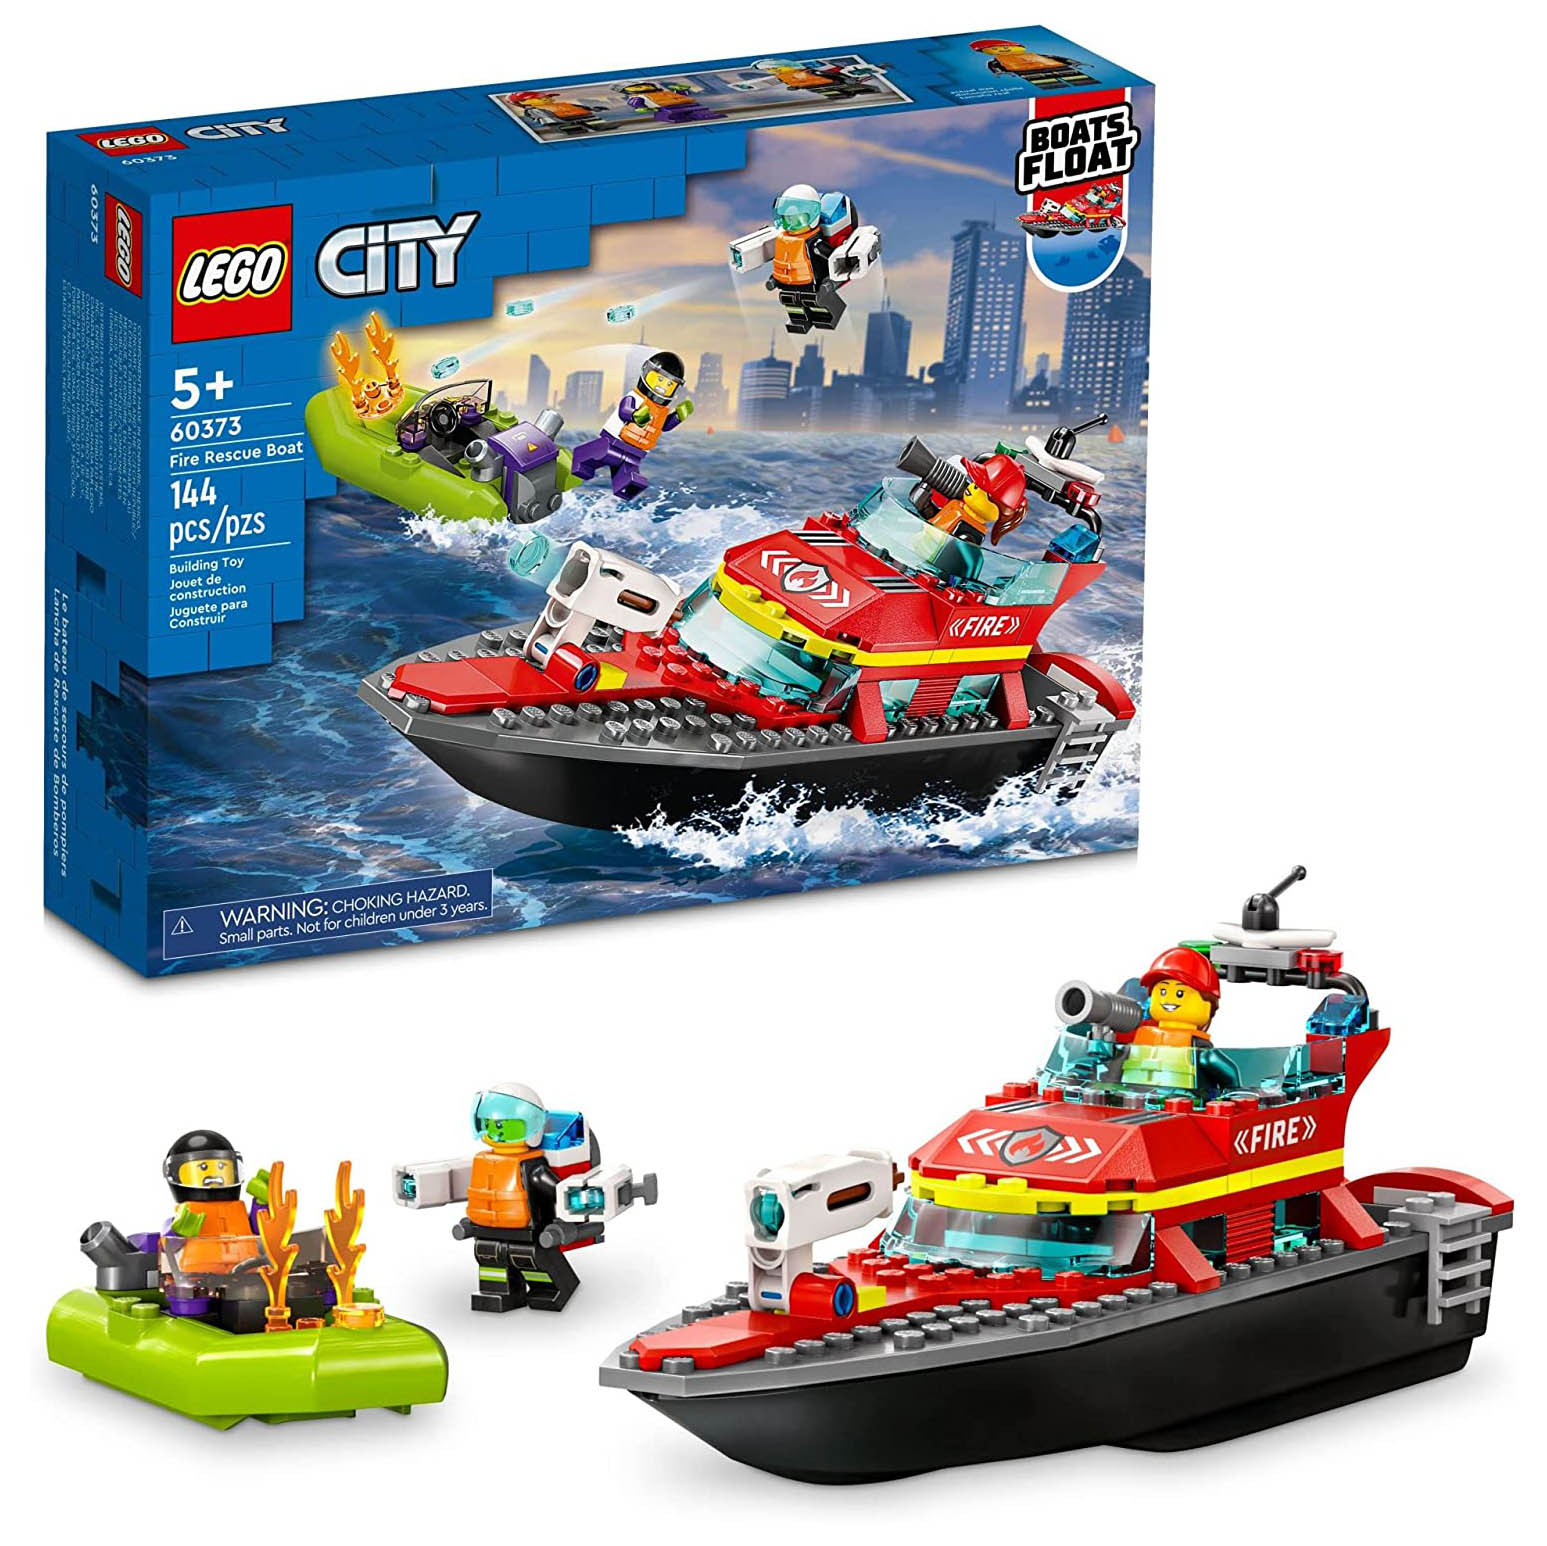 Конструктор LEGO City Пожарная спасательная лодка, 144 детали, 60373 конструктор lego 60319 city fire rescue